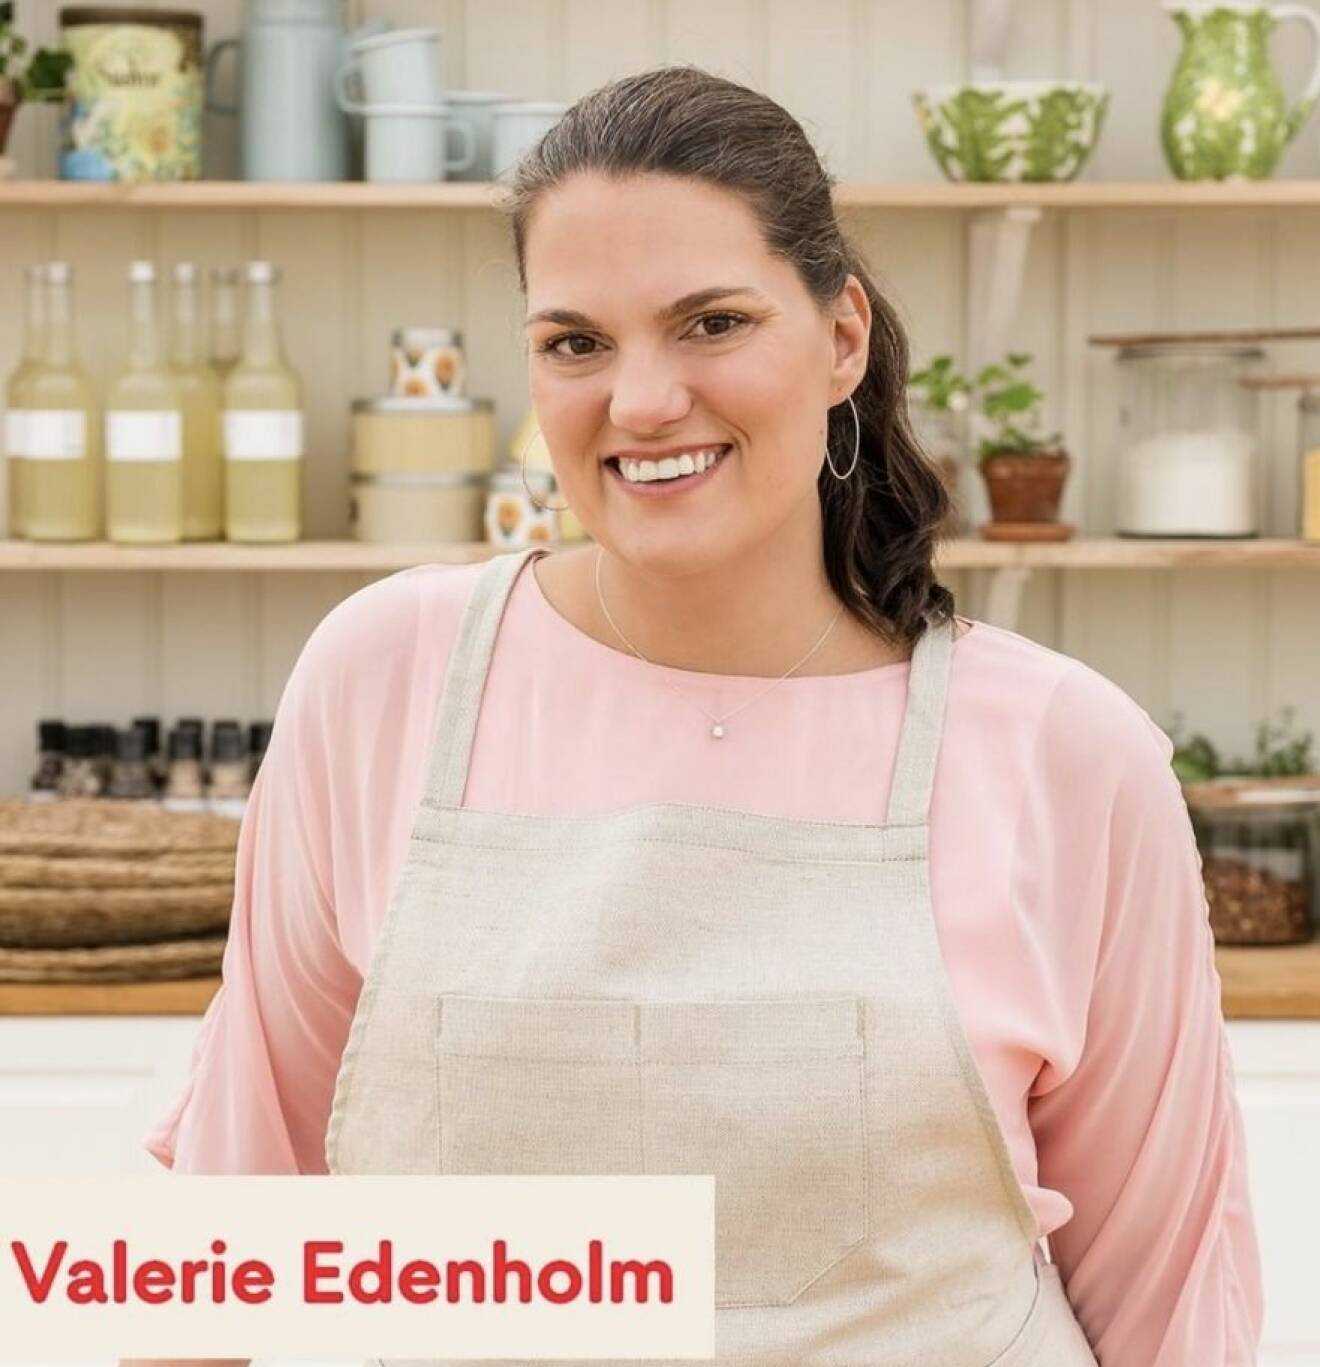 Valerie Edenholm